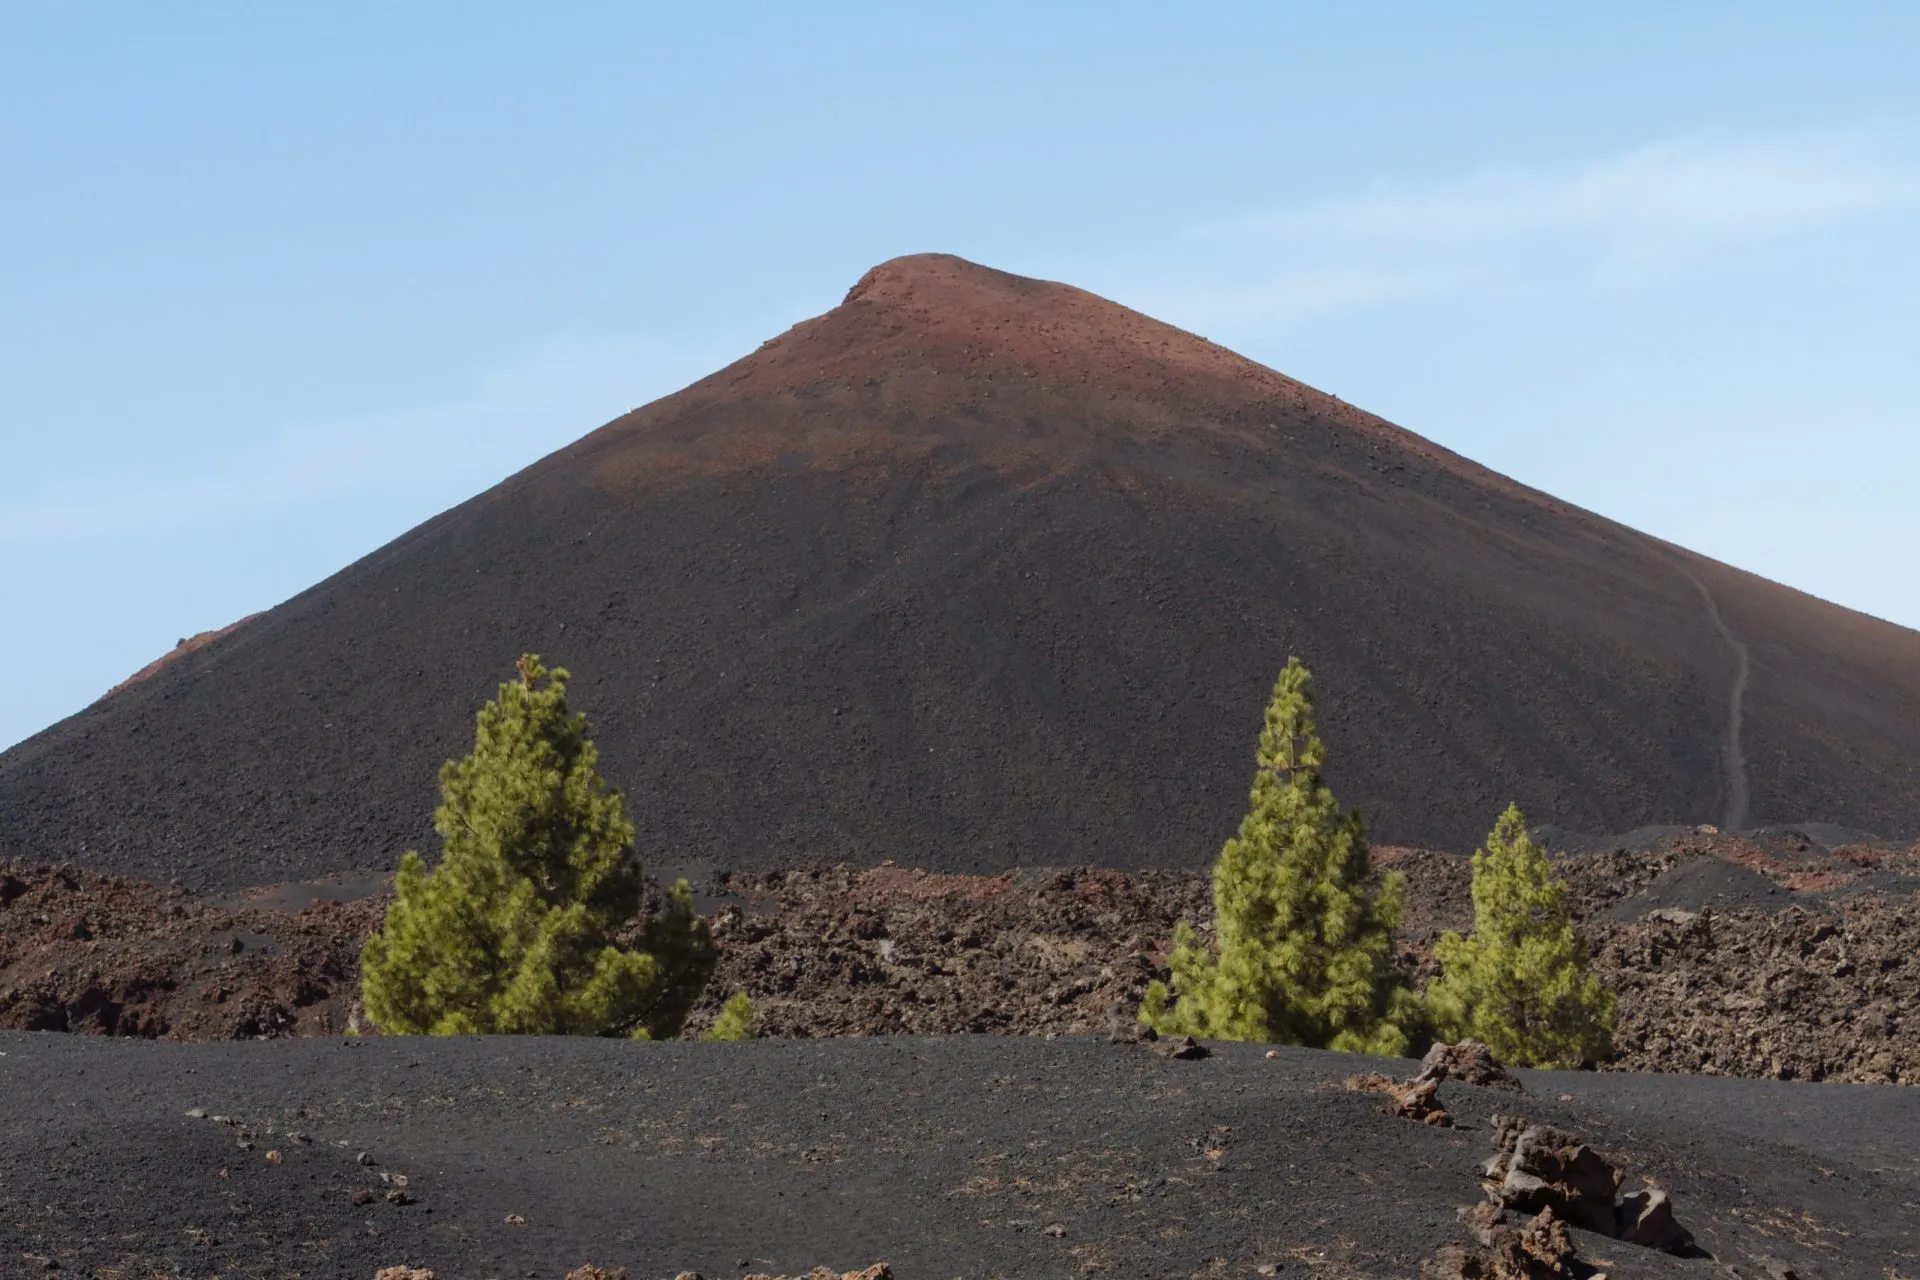 Dark volcanic desert landscape with green trees